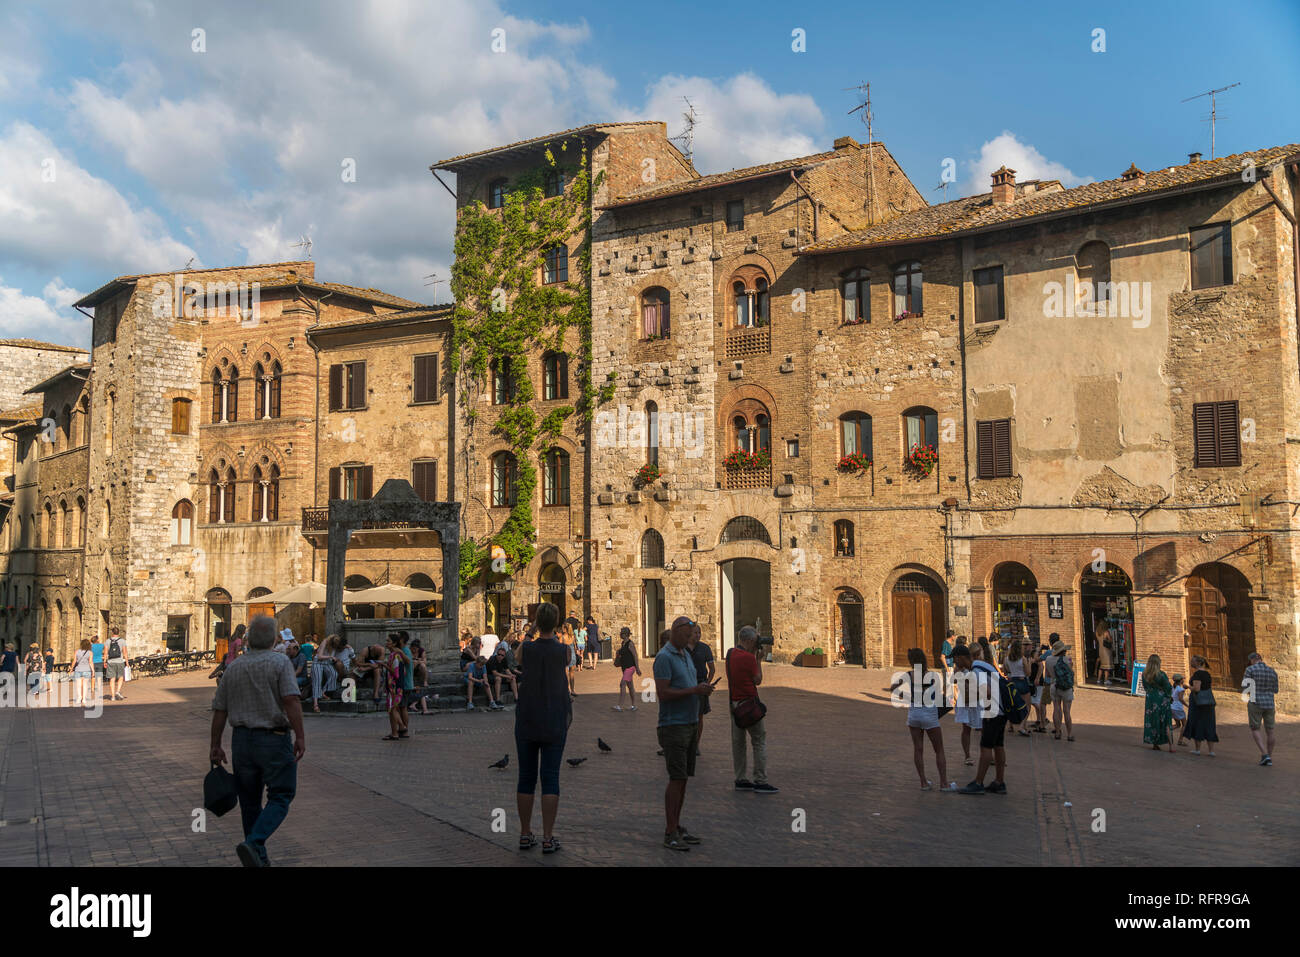 Piazza della cisterna im historischen Zentrum San Gimignano, Toskana, Italien  |   Piazza della cisterna square at the historic centre, San Gimignano, Stock Photo